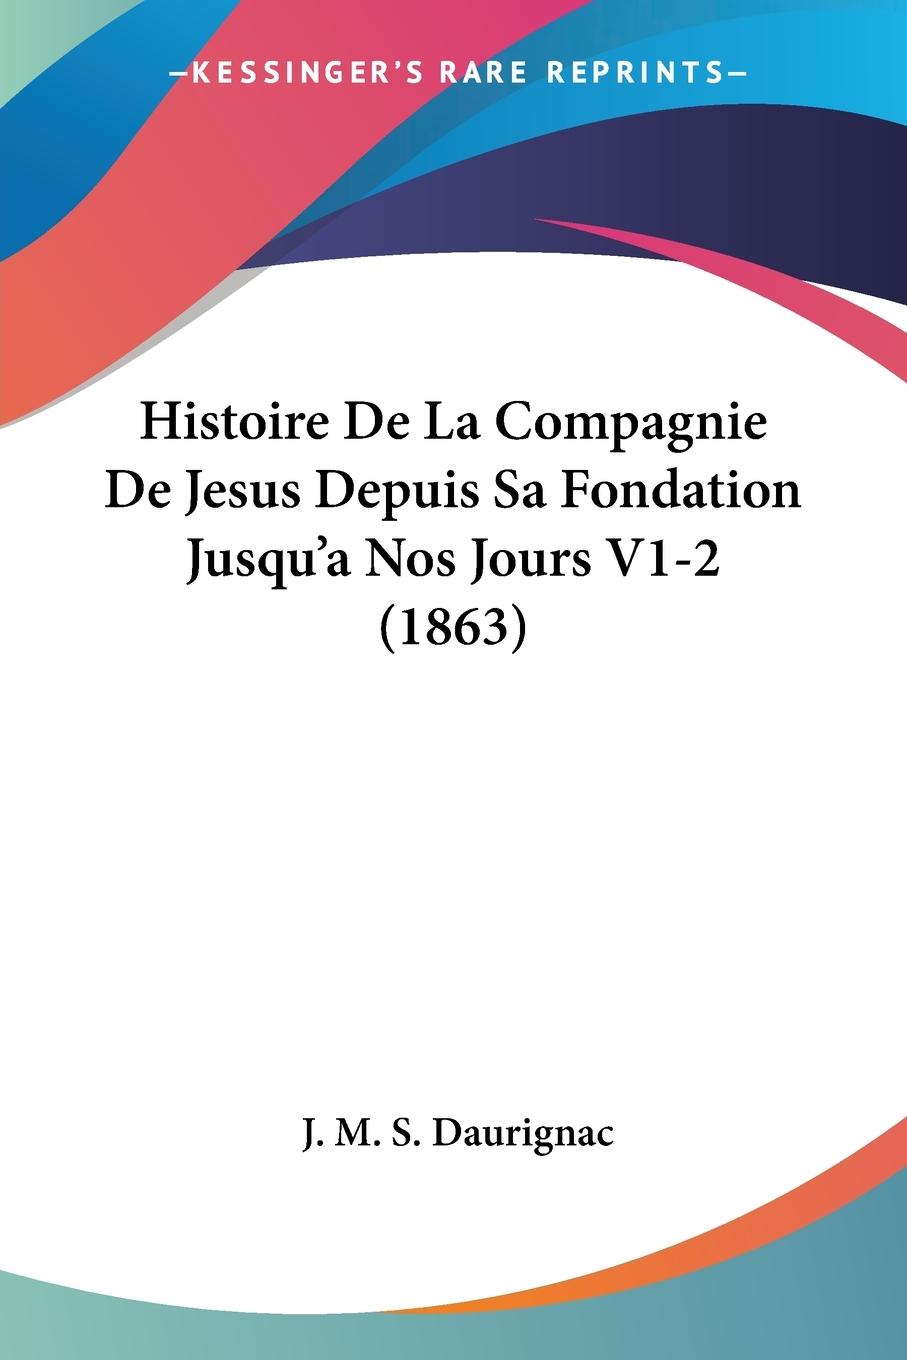 Histoire De La Compagnie De Jesus Depuis Sa Fondation Jusqu a Nos Jours V1-2 (1863) - Daurignac, J. M. S.